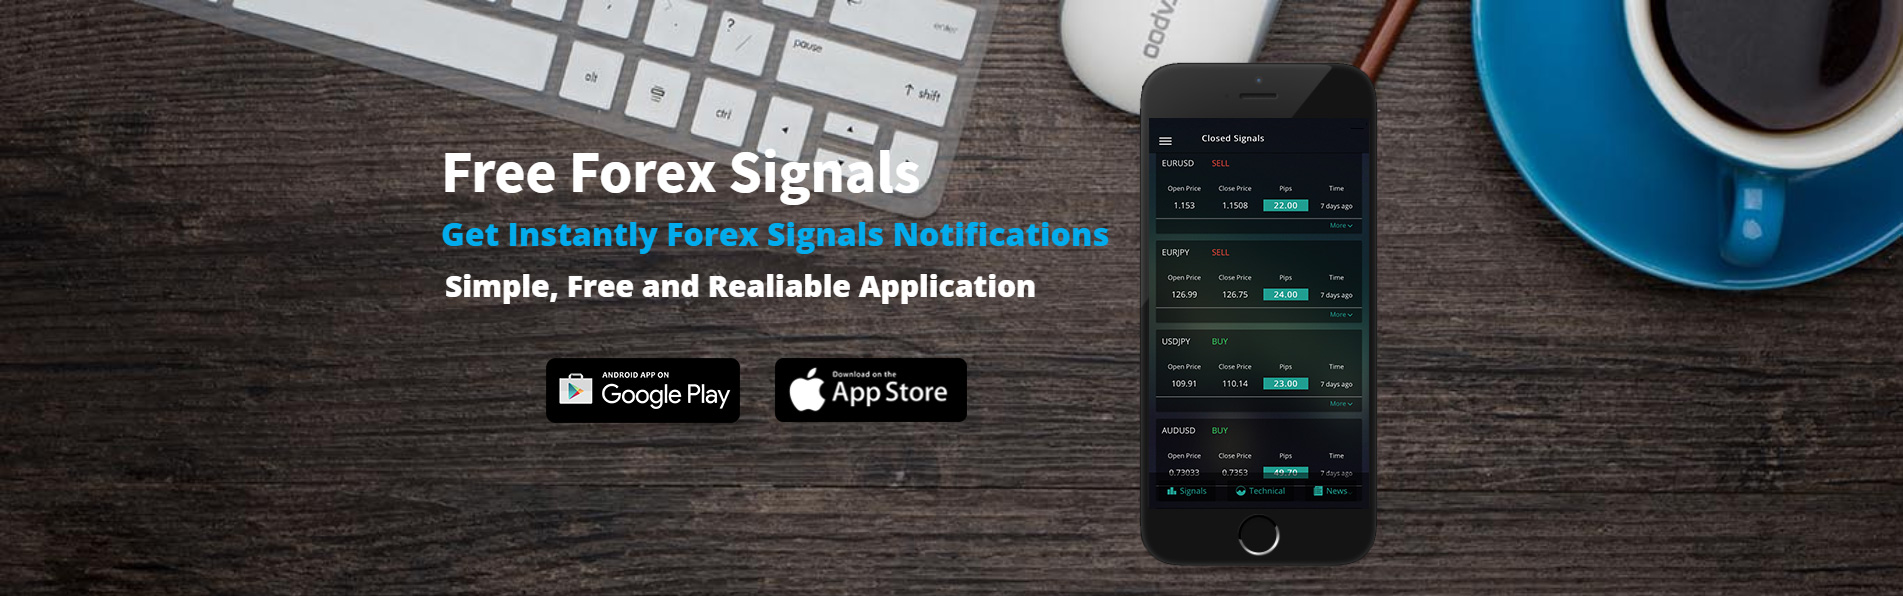 Best free forex signals app